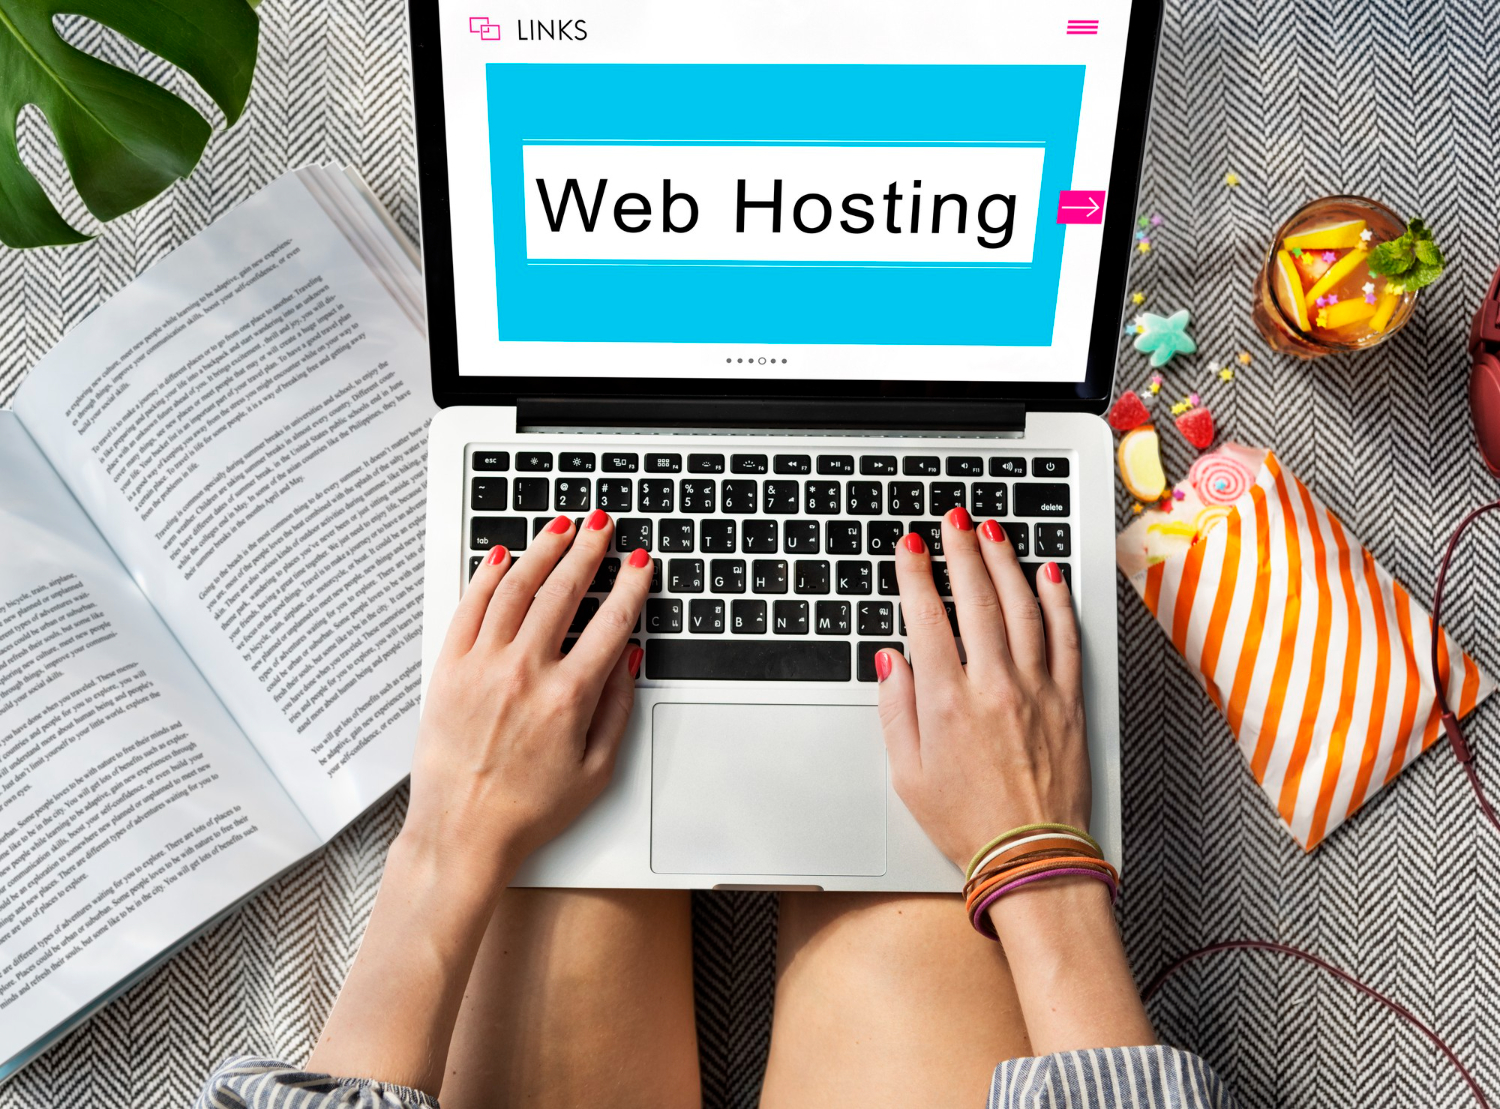 web hosting in lahore